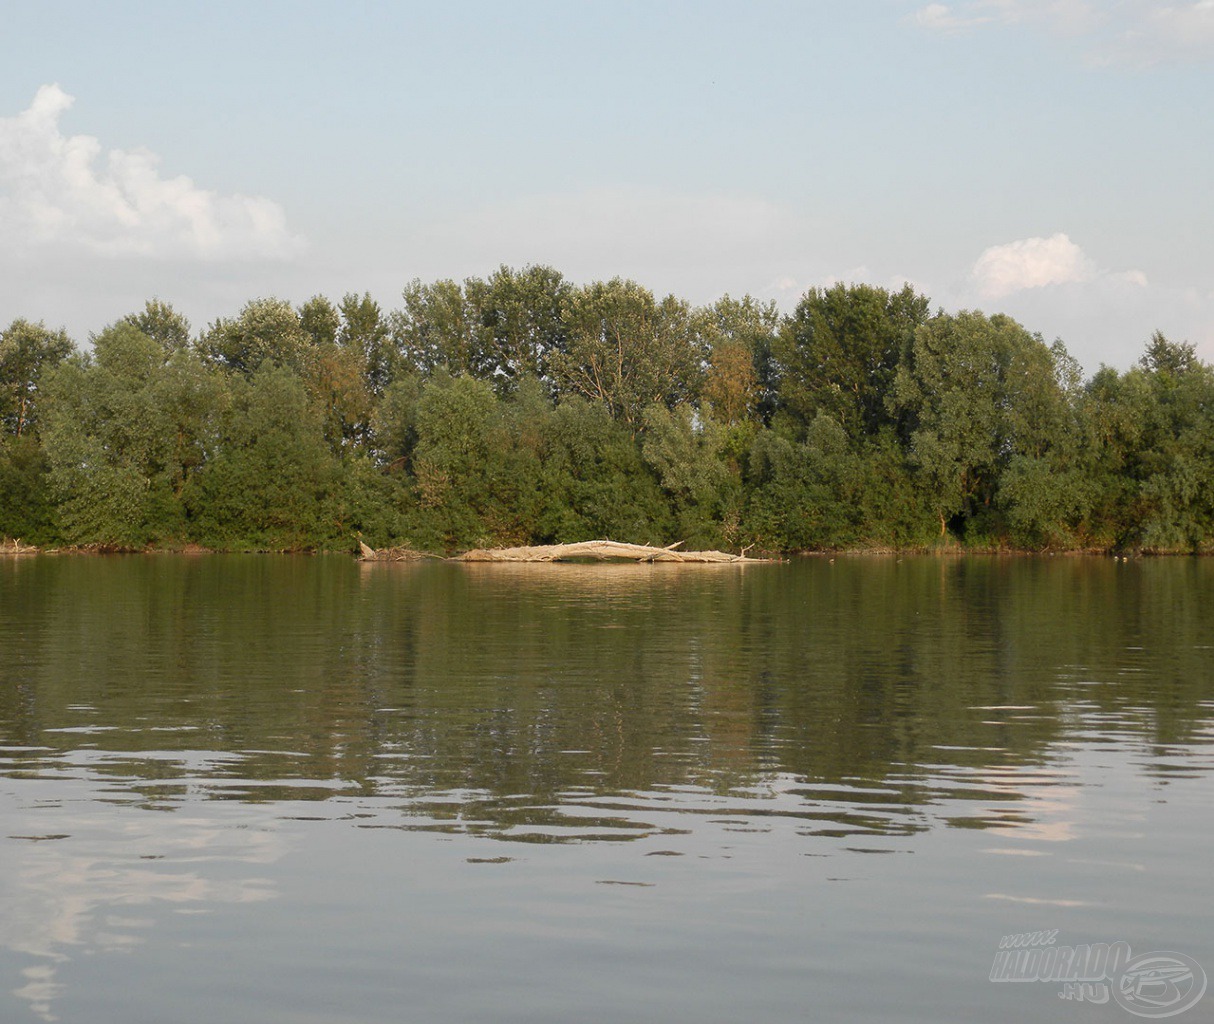 Megakadt nagy fa a Tisza közepén